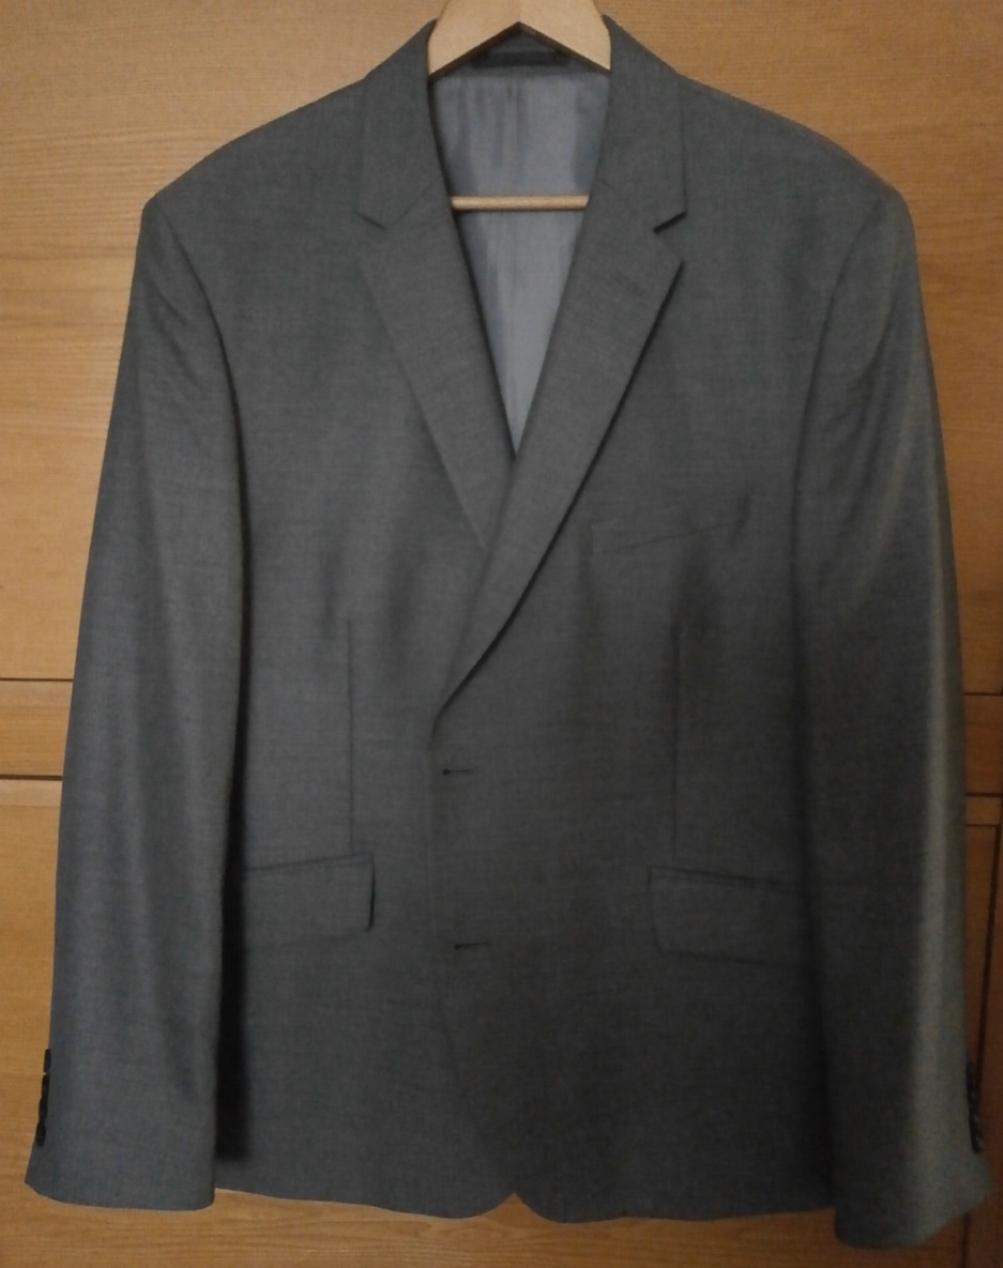 Pánský společenský šedý oblek - Obrázek č. 1